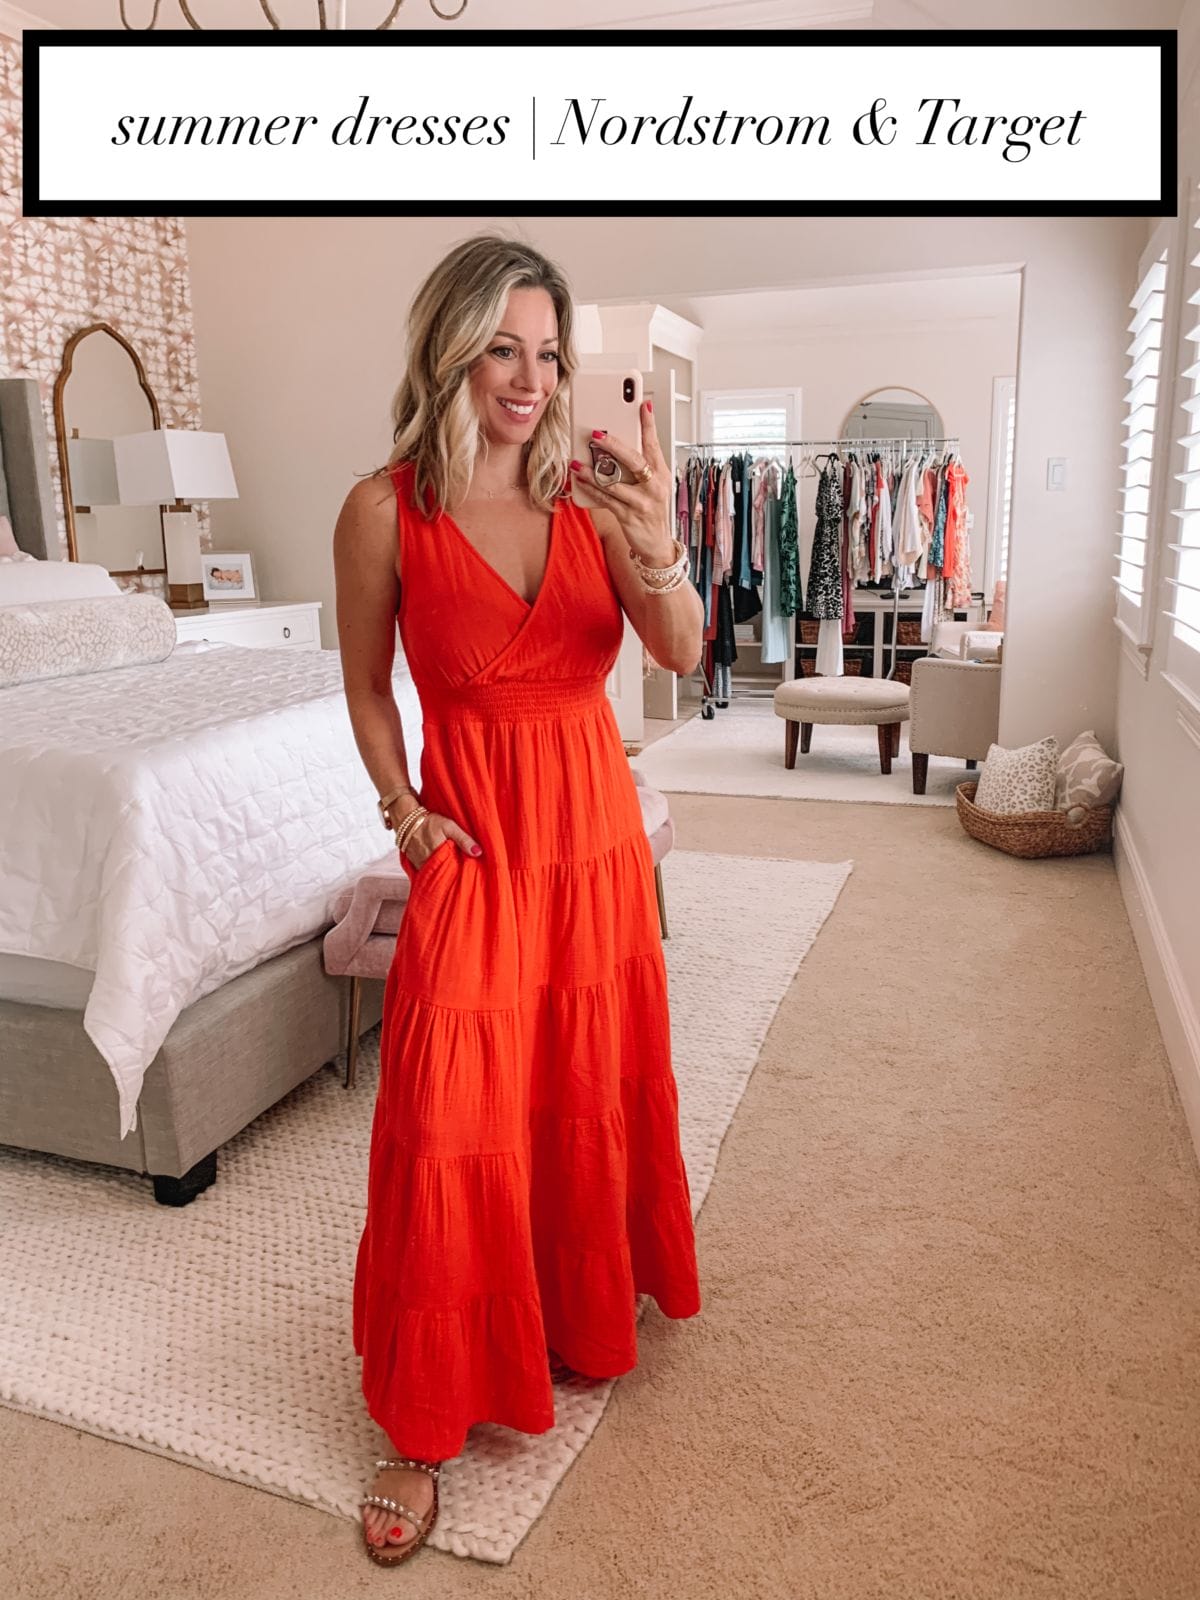 Summer Dresses Target & Nordstrom